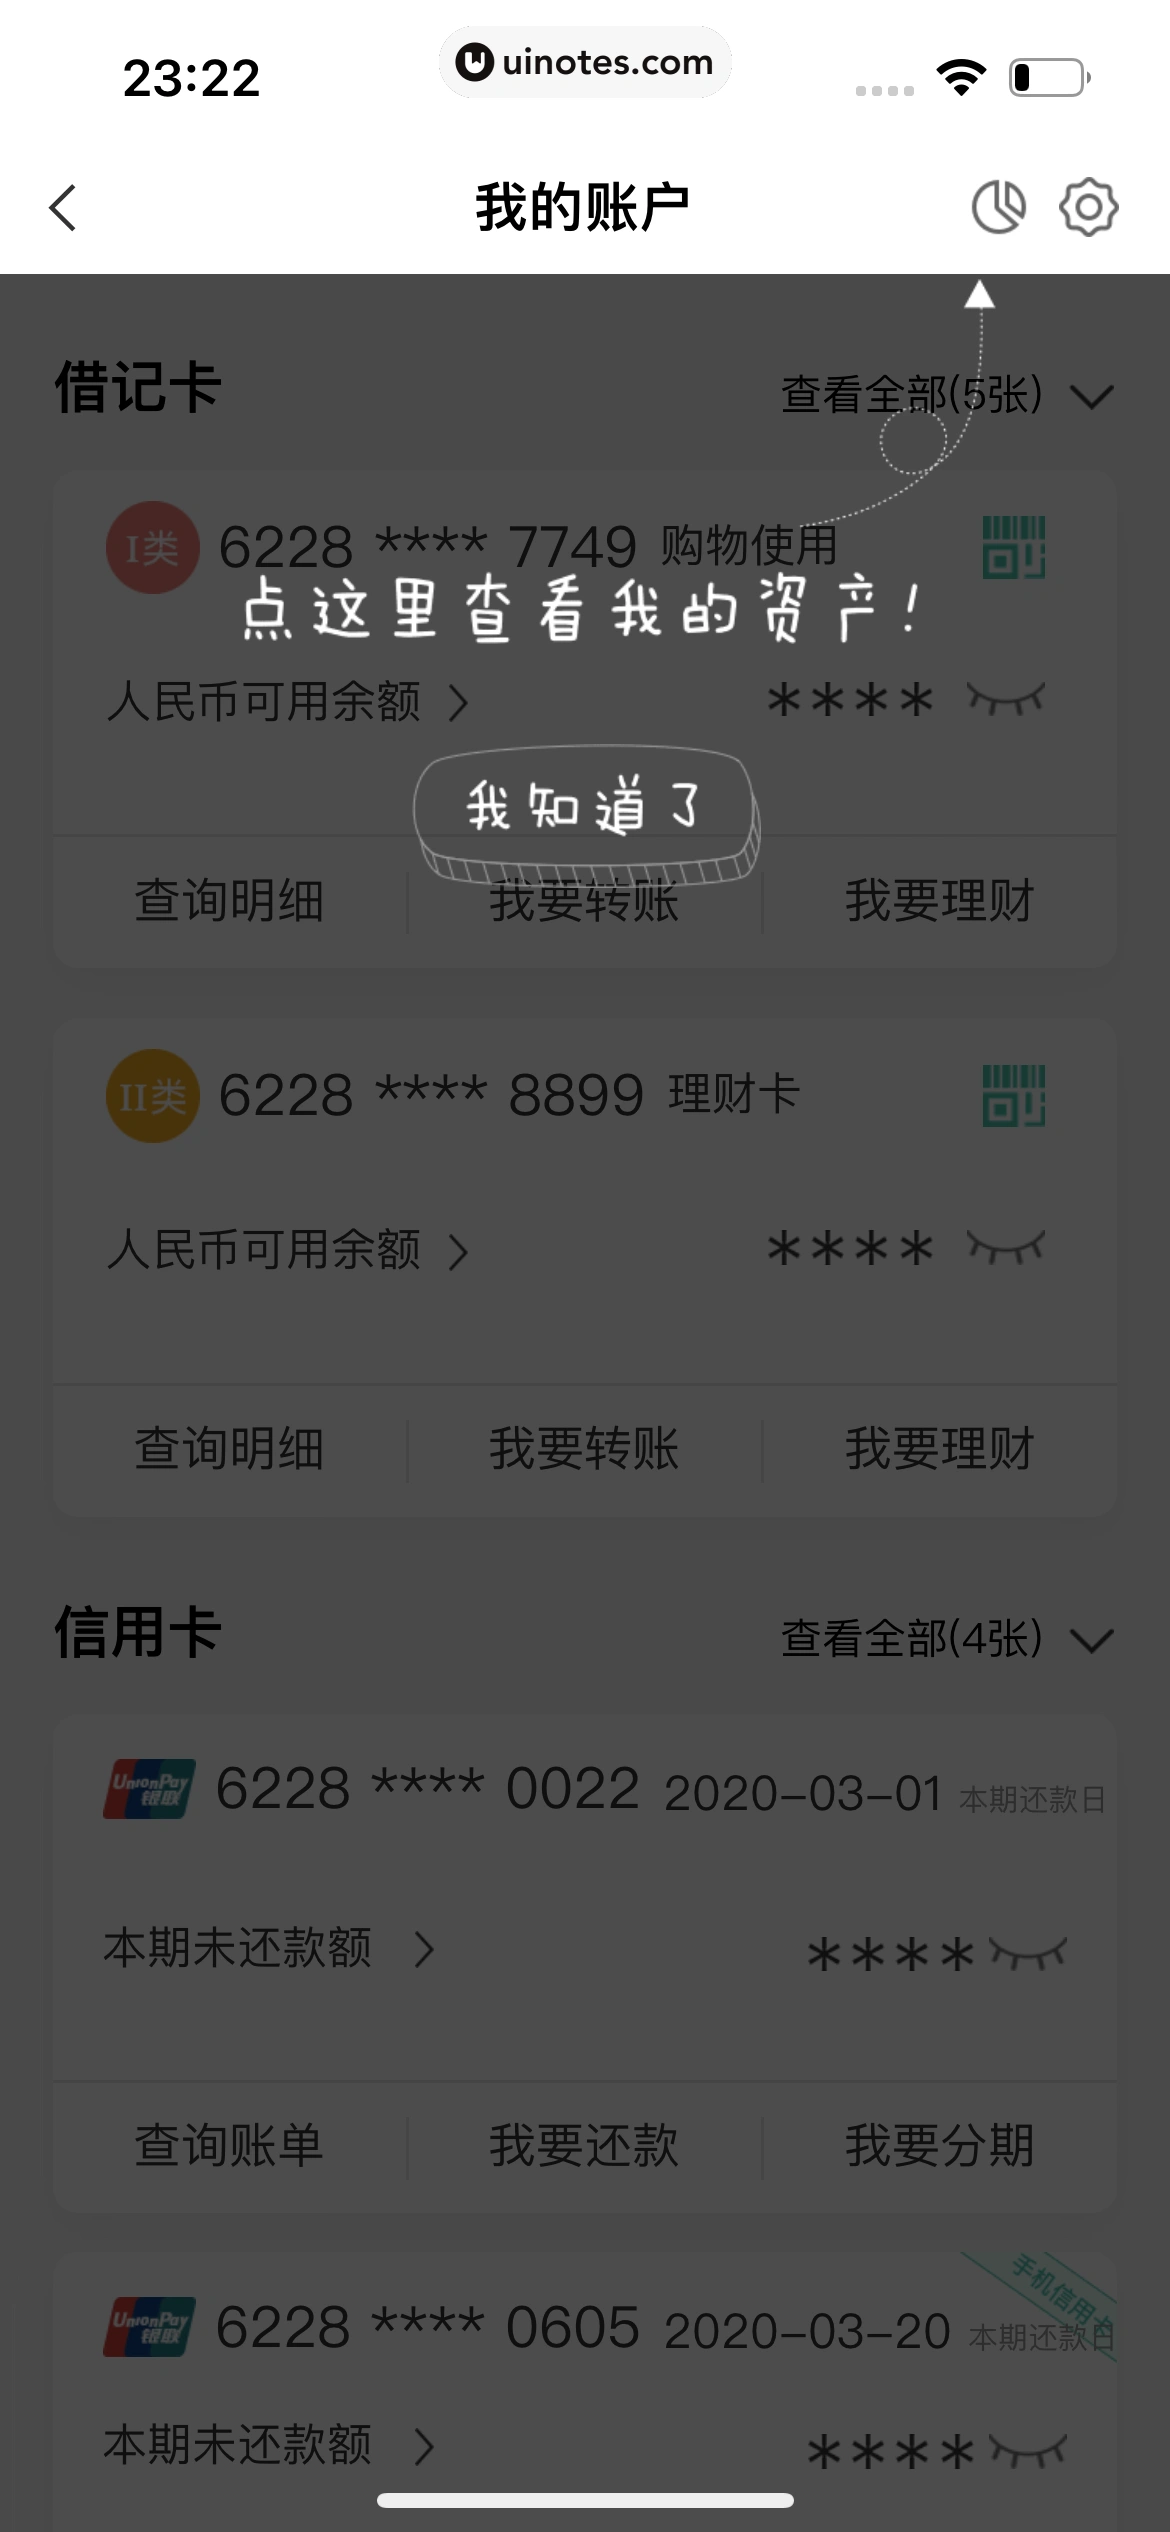 中国农业银行 App 截图 057 - UI Notes